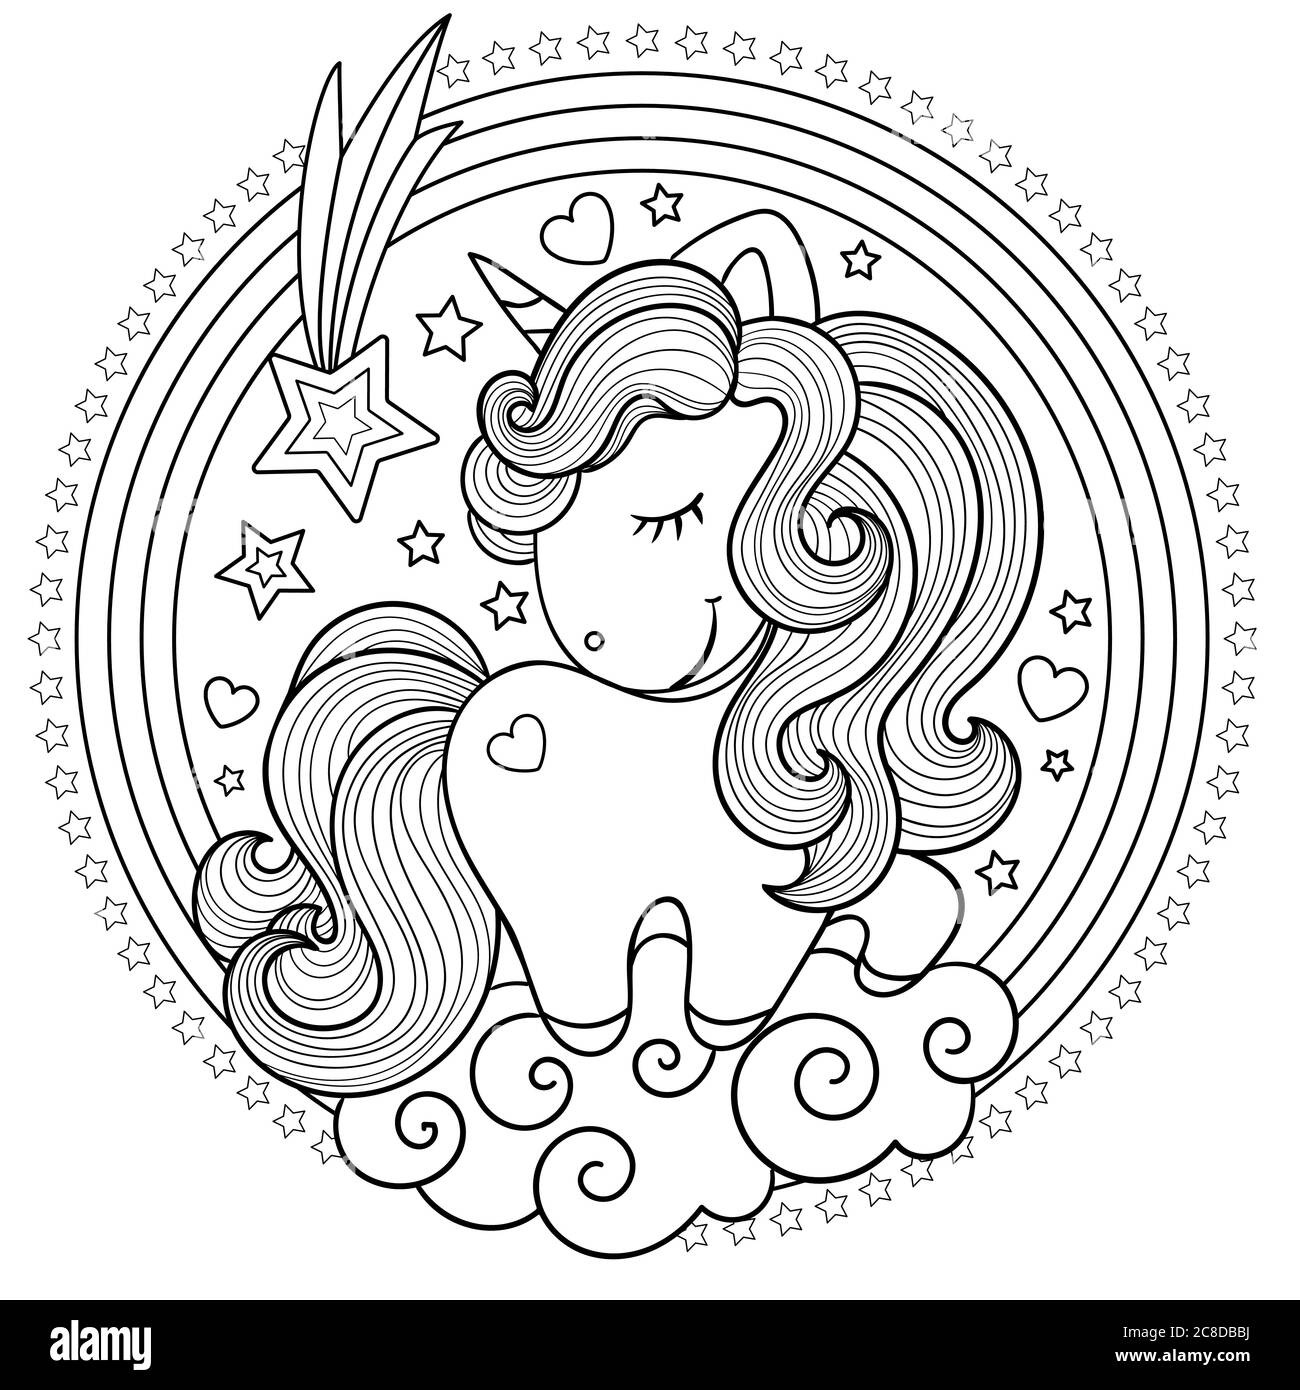 Carino, unicorno cartoon con un arcobaleno rotondo. Bianco e nero. Disegnato a mano. Disegno per bambini, per stampe, poster, libri da colorare, adesivi, cartoncini A. Illustrazione Vettoriale